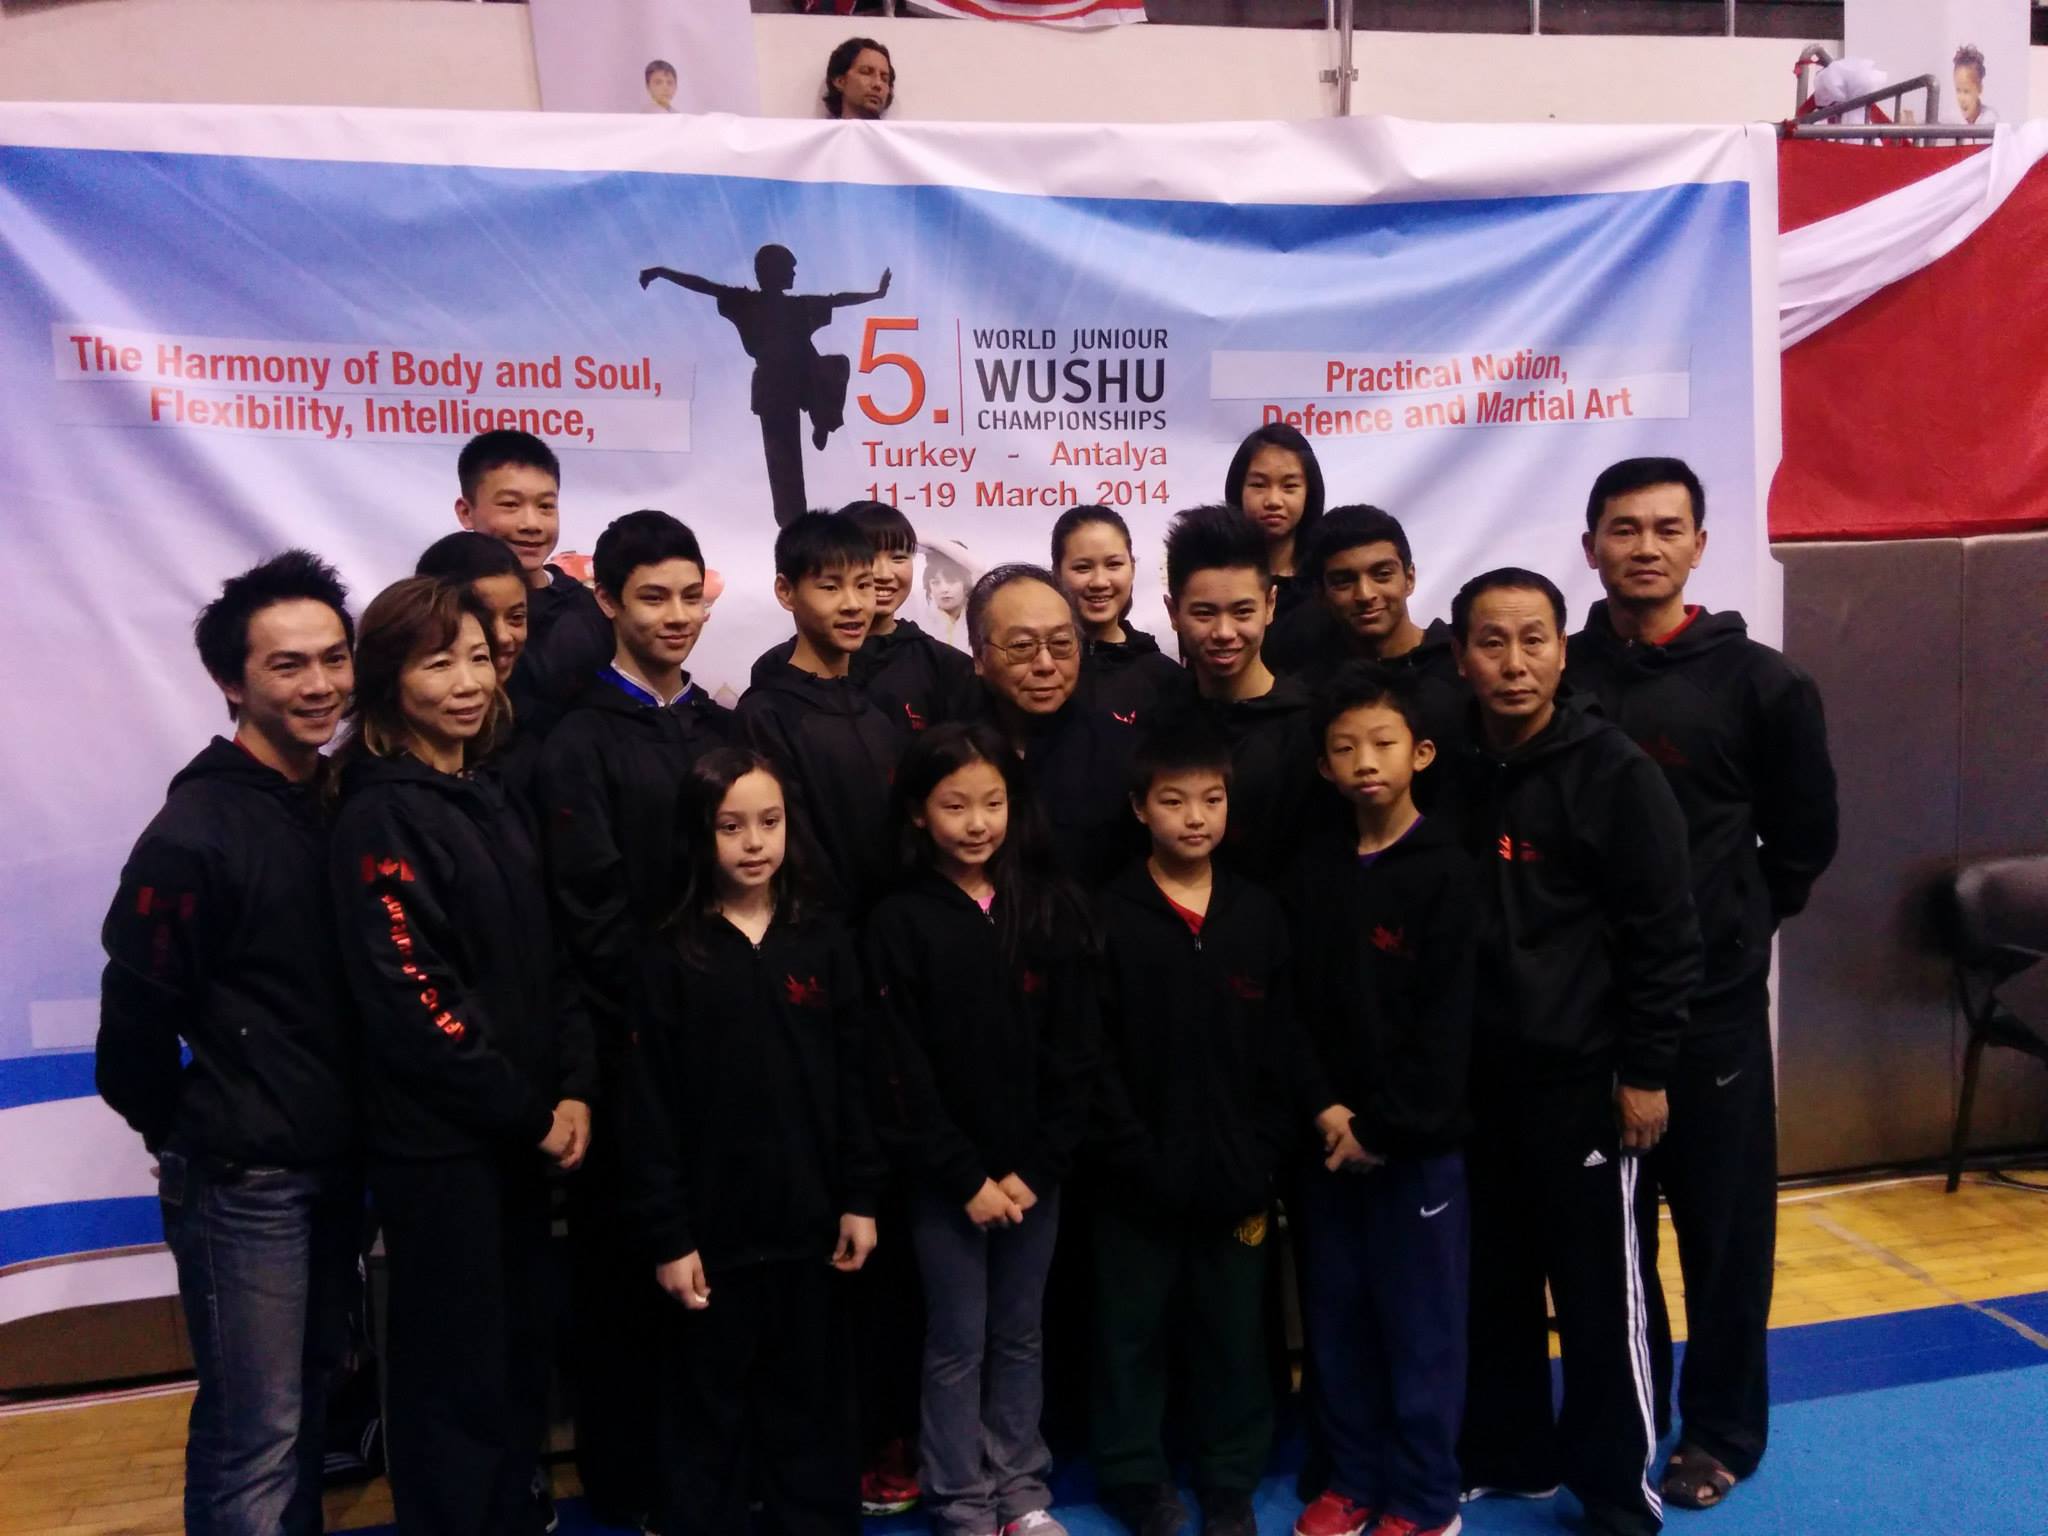 Team Canada, 2014 WJWC, Turkey